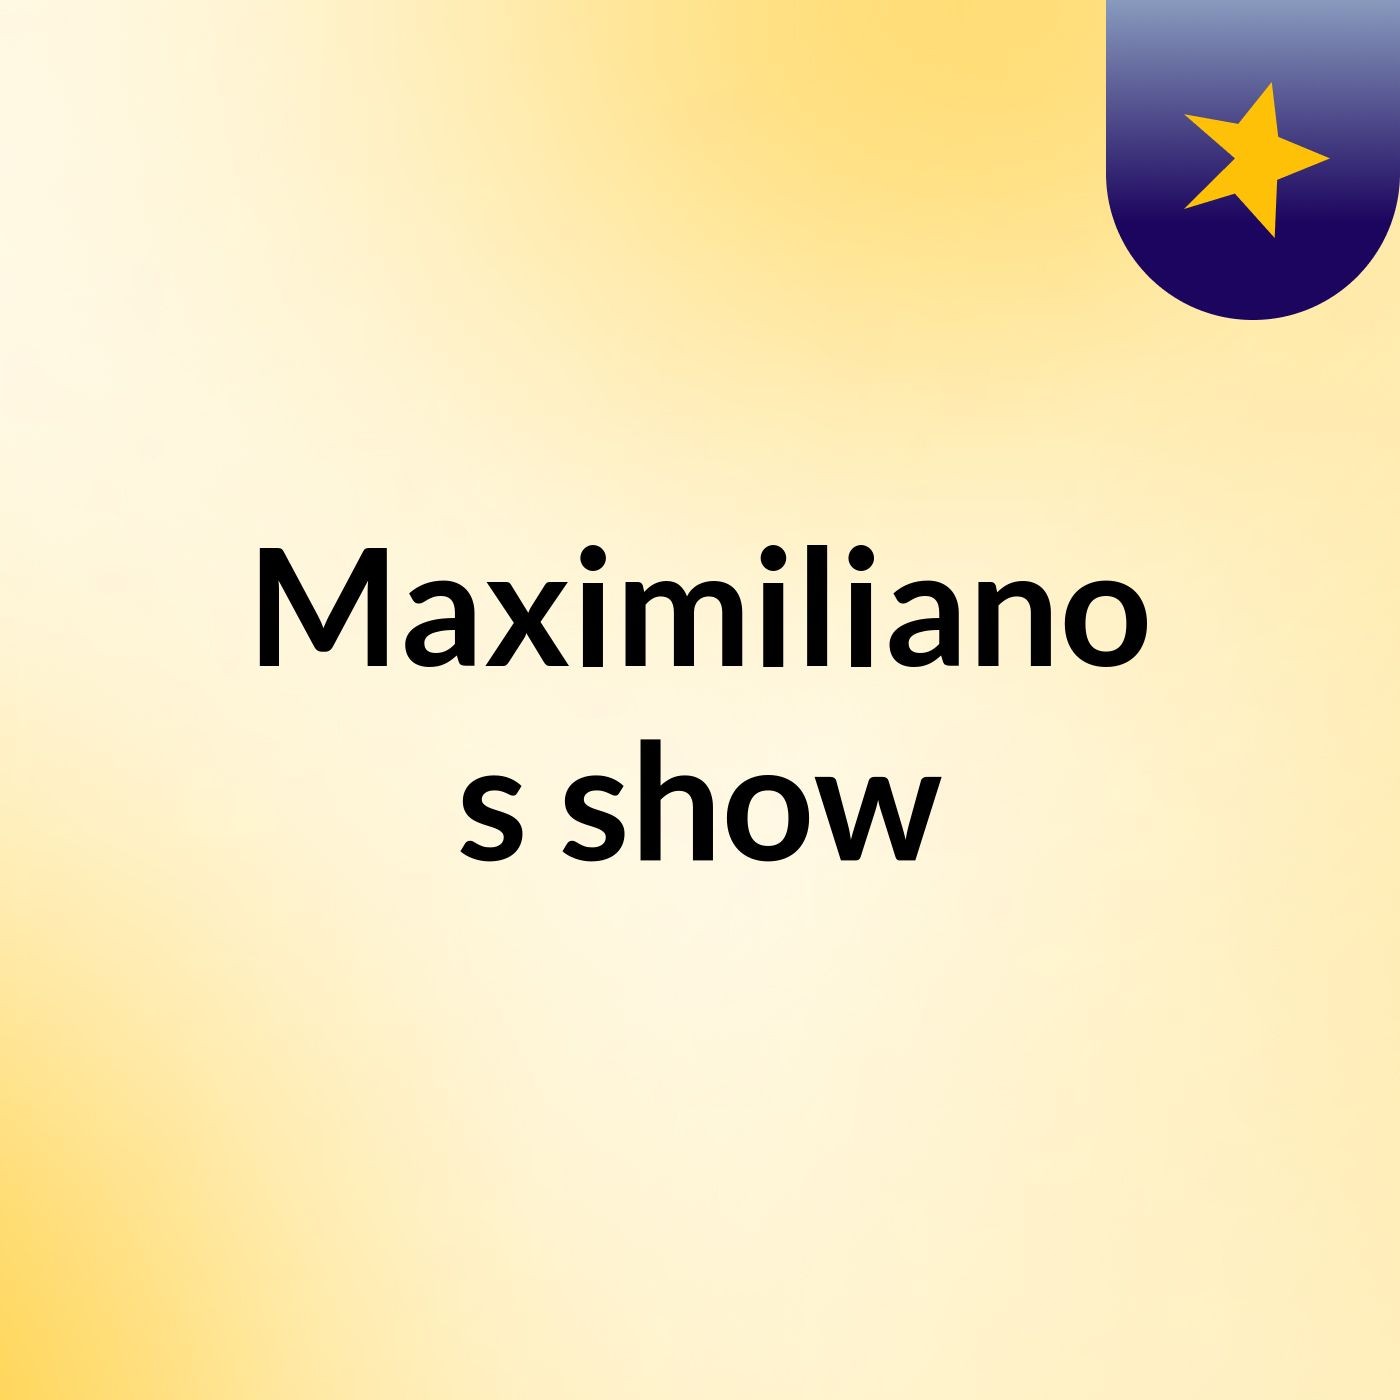 Maximiliano's show